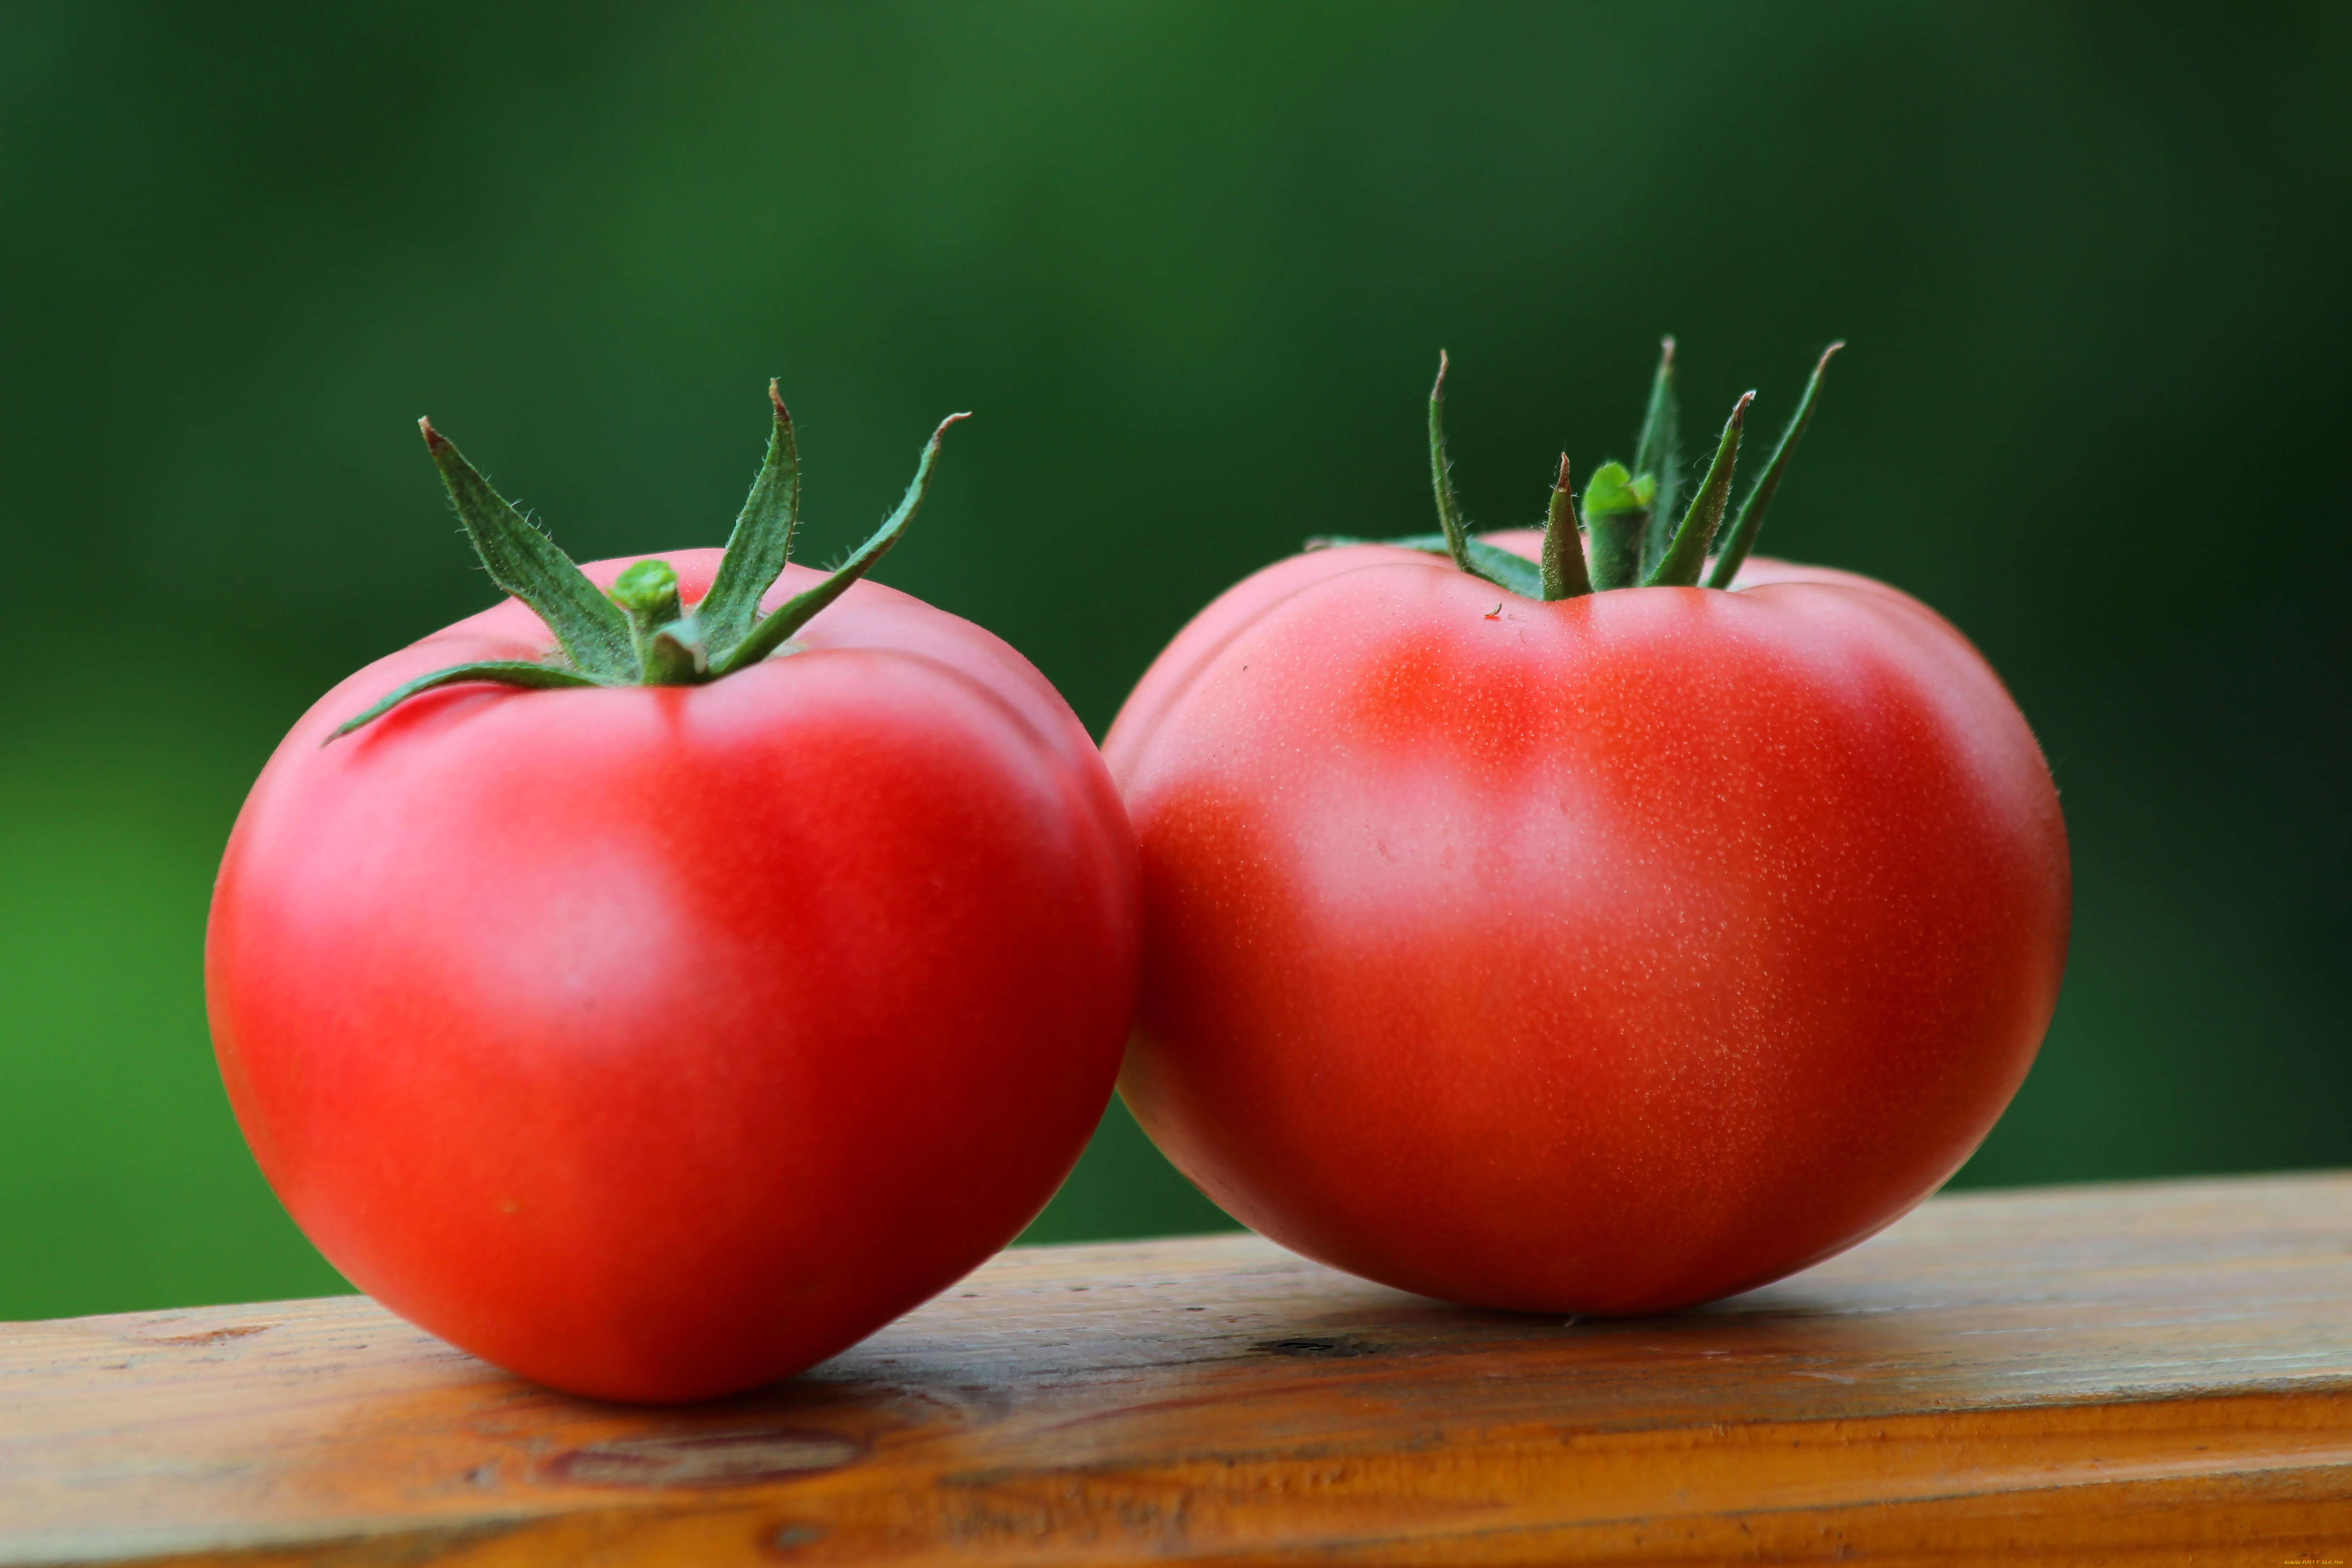 еда, помидоры, дача, урожай, томаты, своё, природа, овощи, лето, вкусно, витамины